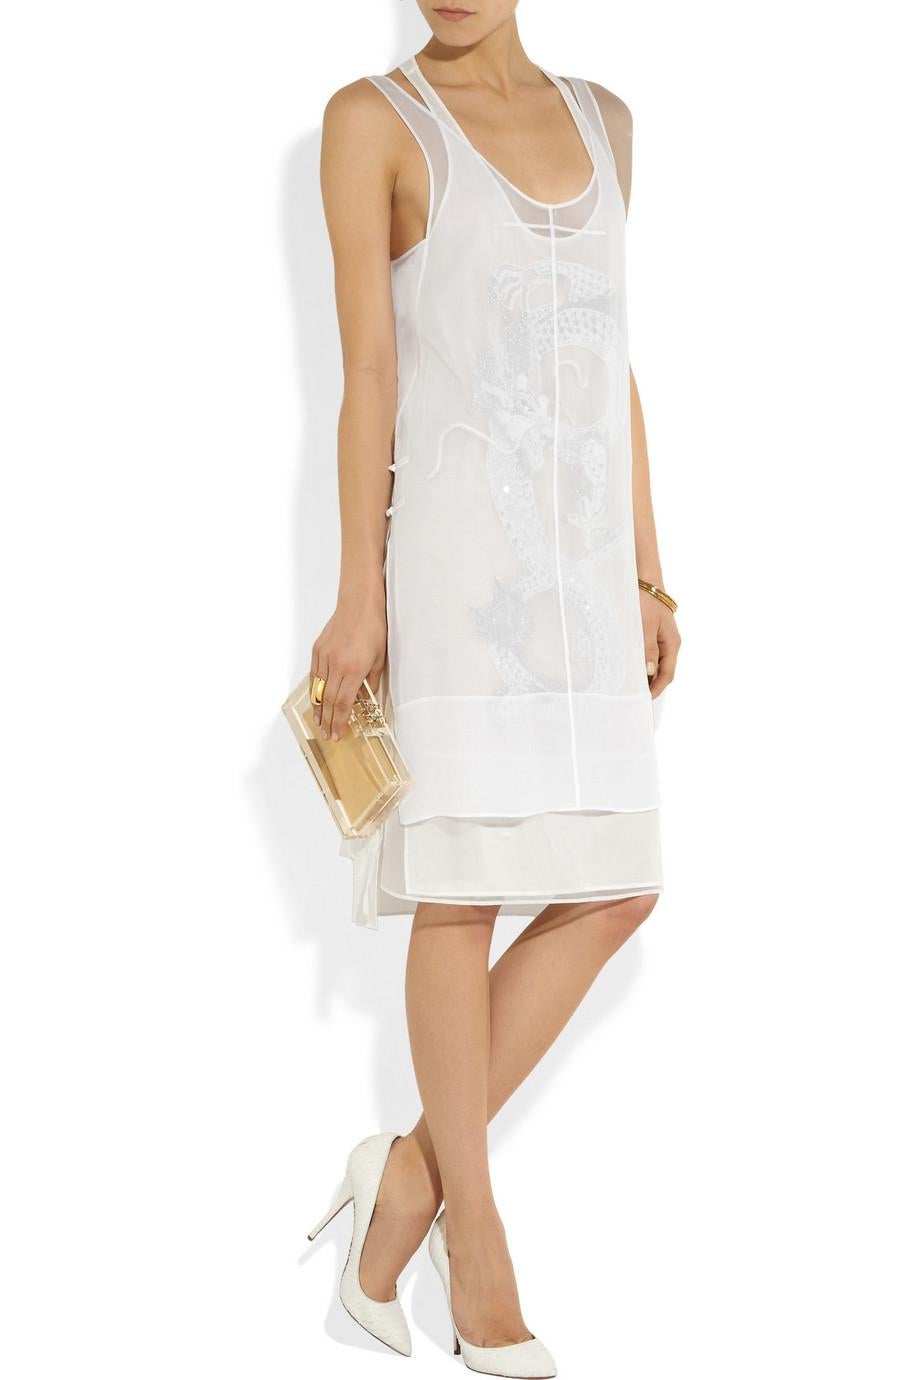 Cette robe Emilio Pucci associe un tissu léger et transparent à une silhouette qui épouse les courbes, pour un look à la fois glamour et décontracté. Les broderies complexes inspirées de l'art vietnamien ajoutent une complexité visuelle